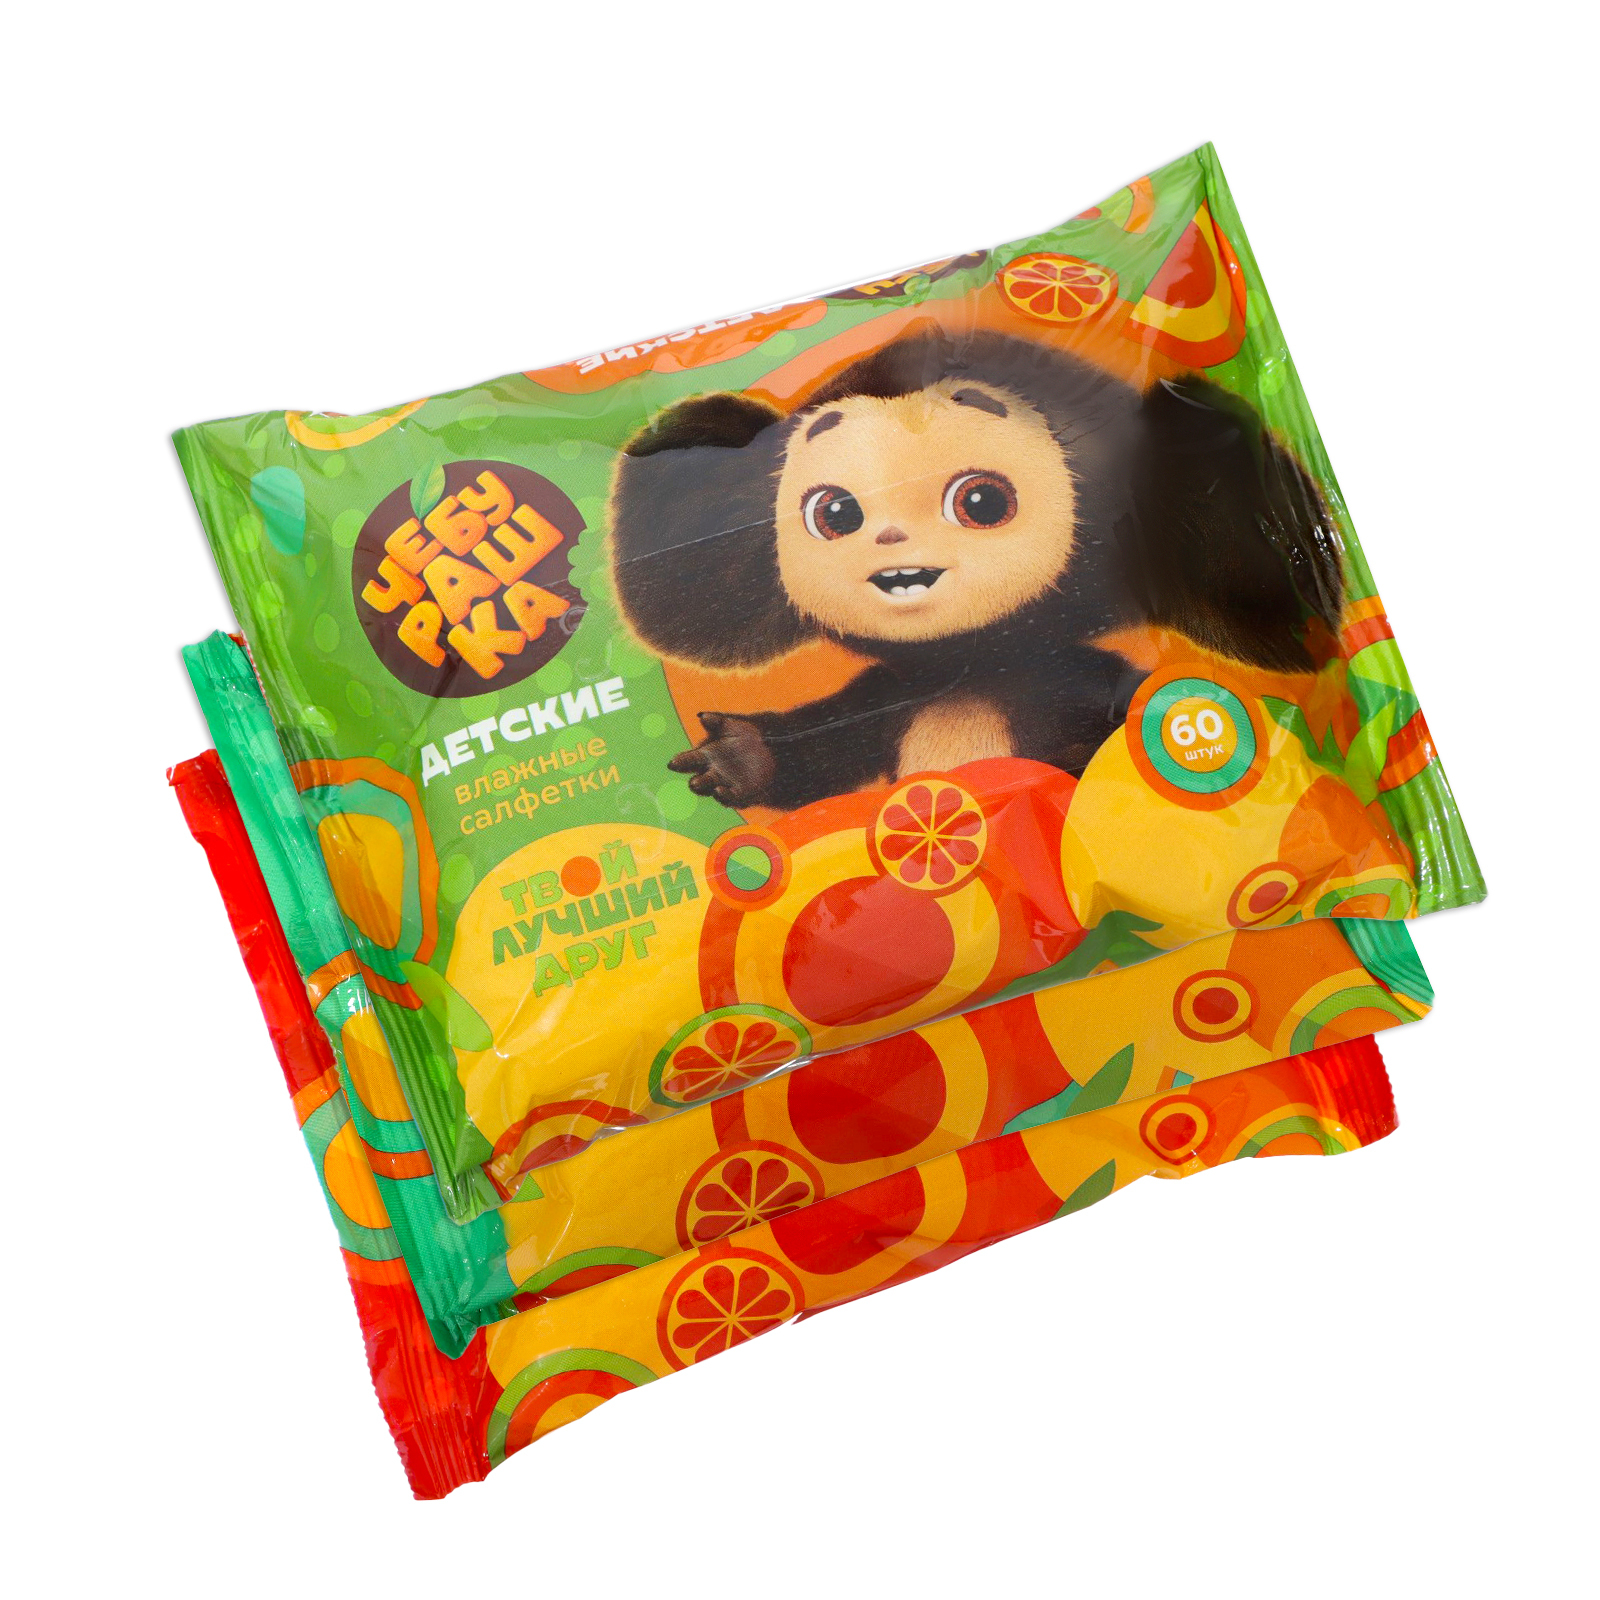 Влажные салфетки Чебурашка детские 3 упаковки по 60 штук